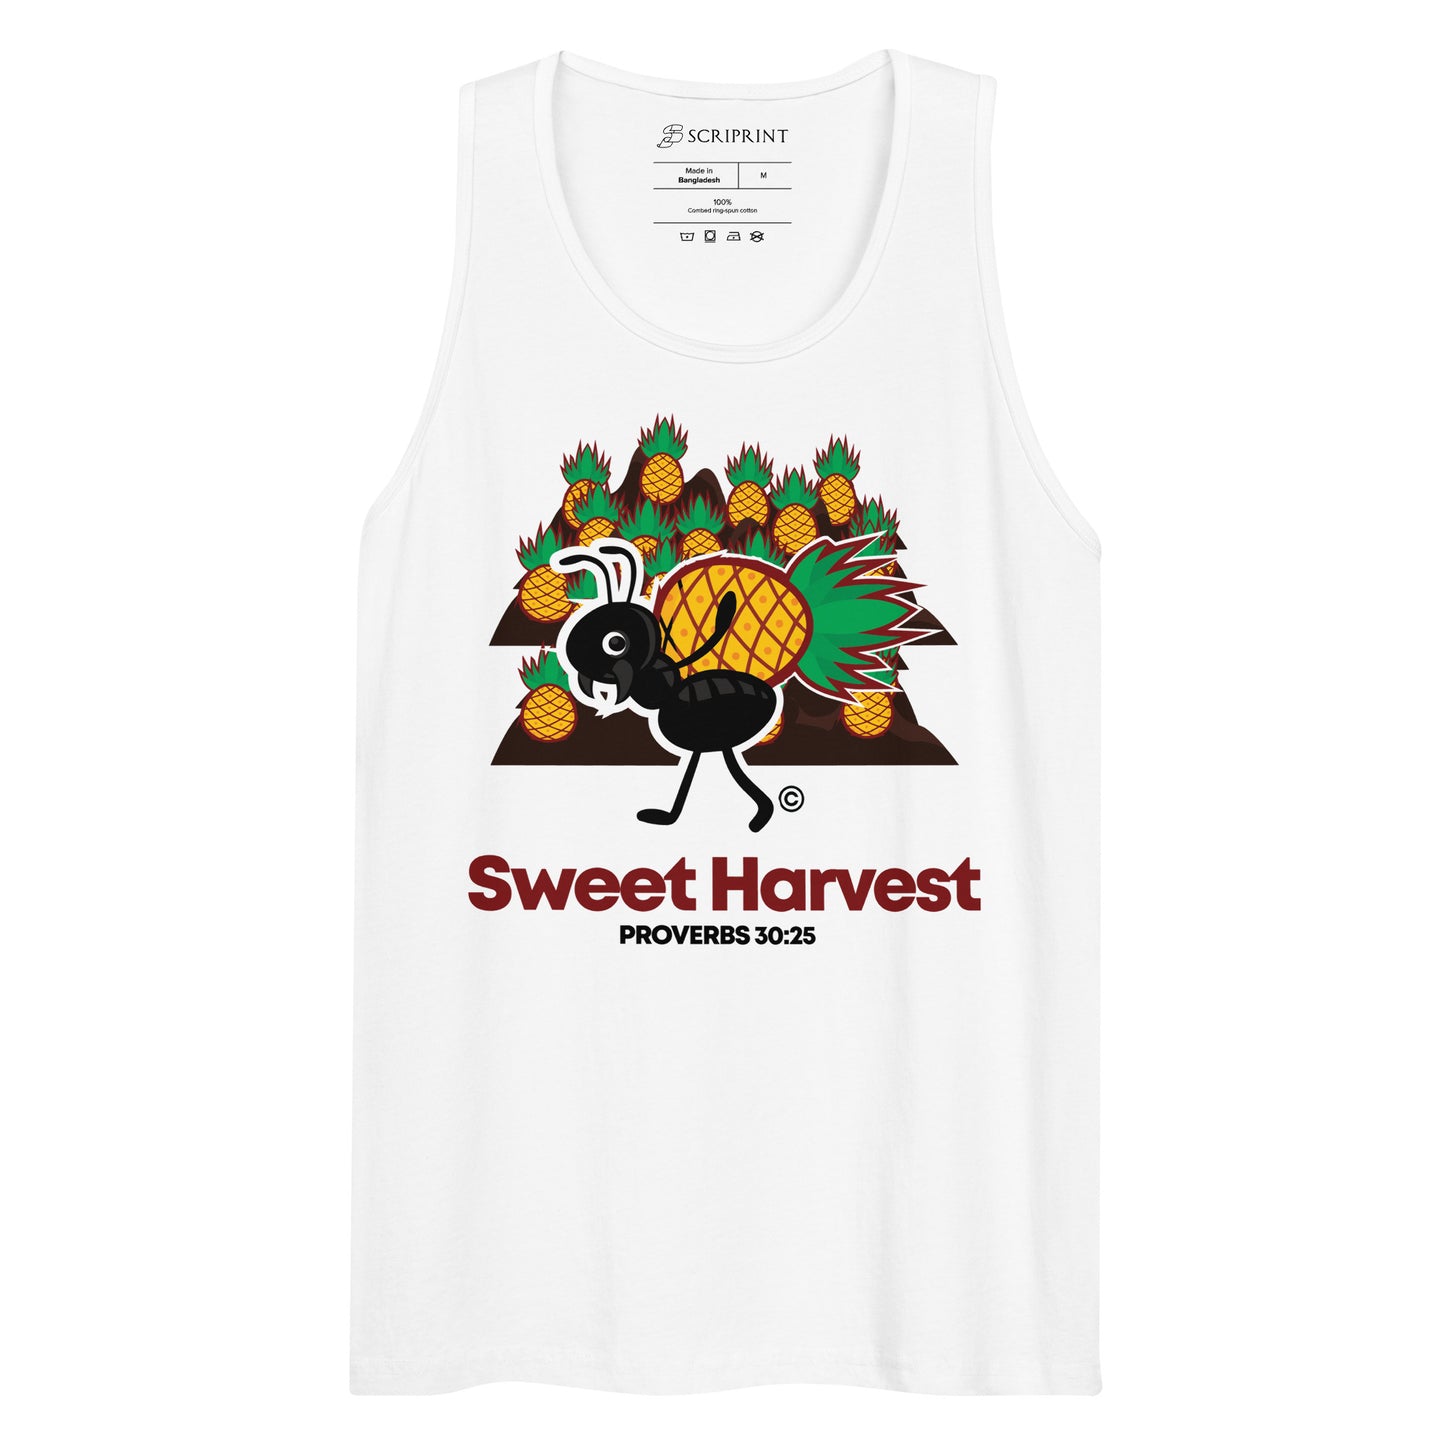 Sweet Harvest Men’s Premium Tank Top